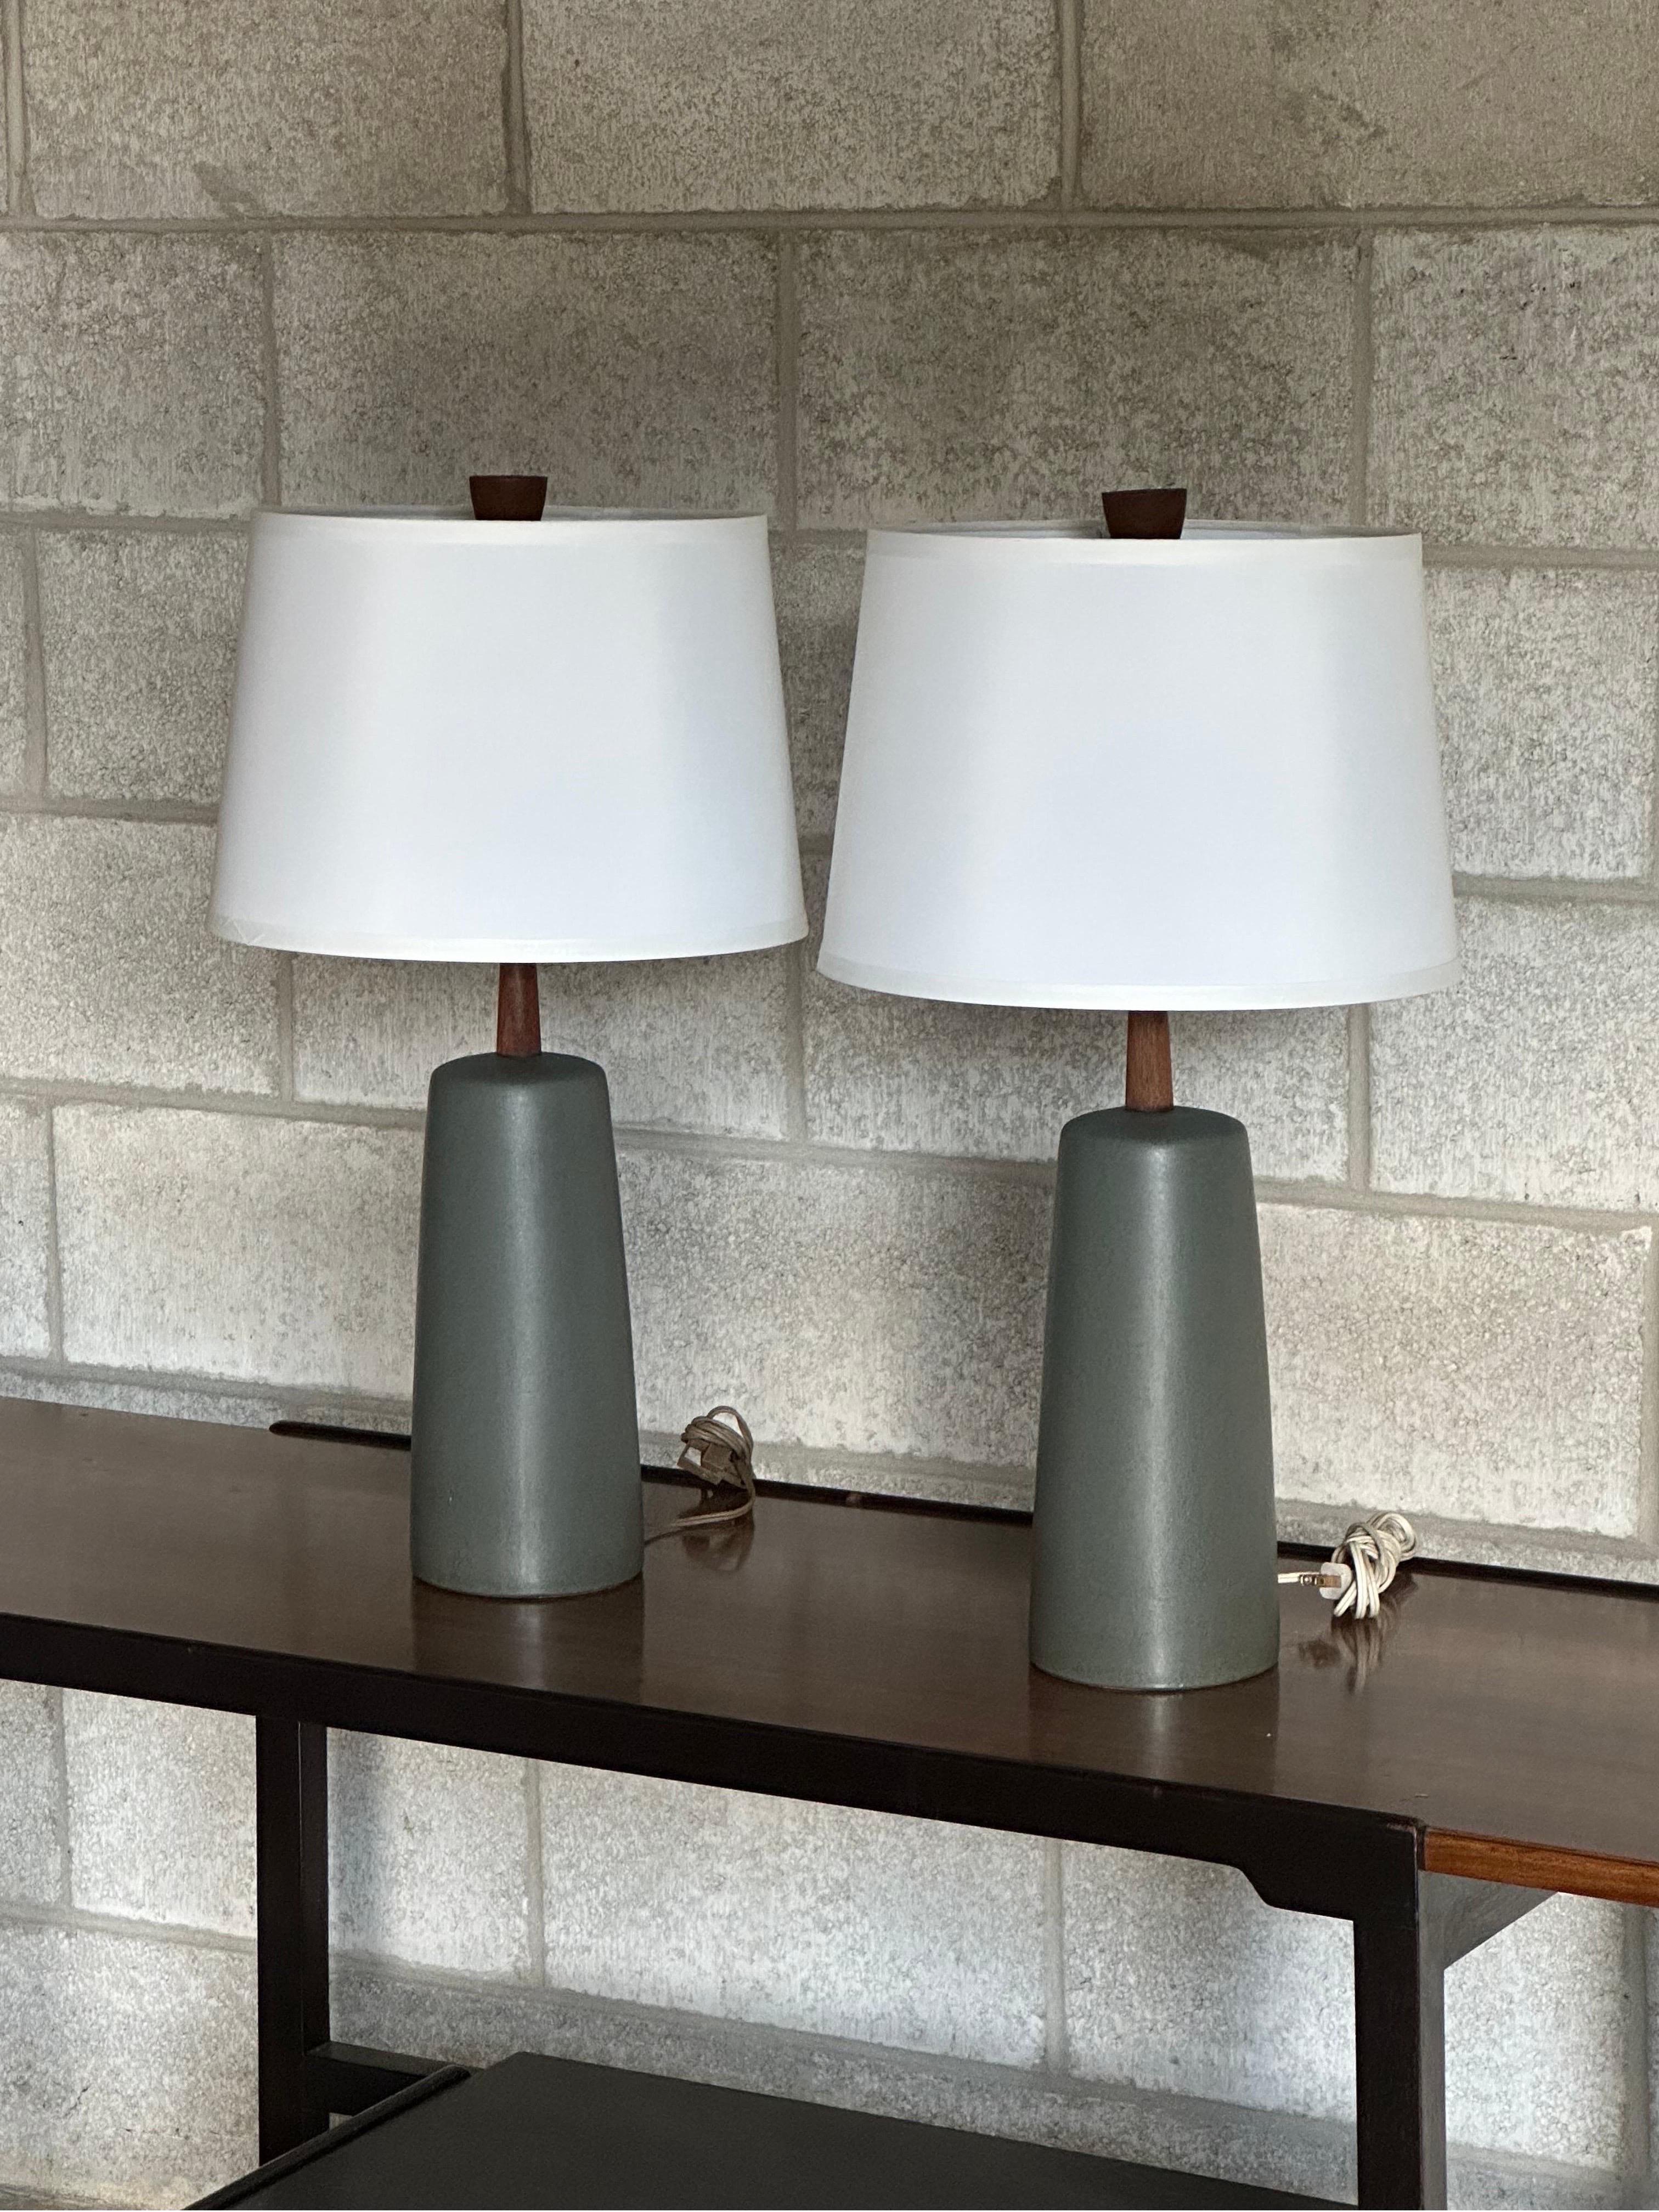 Paire de lampes de table réalisées par le célèbre duo de céramistes Jane et Gordon Martz pour les studios Marshall. Le corps est d'une magnifique couleur turquoise et le manche et l'embout sont en noyer.

Dimensions
En général
24